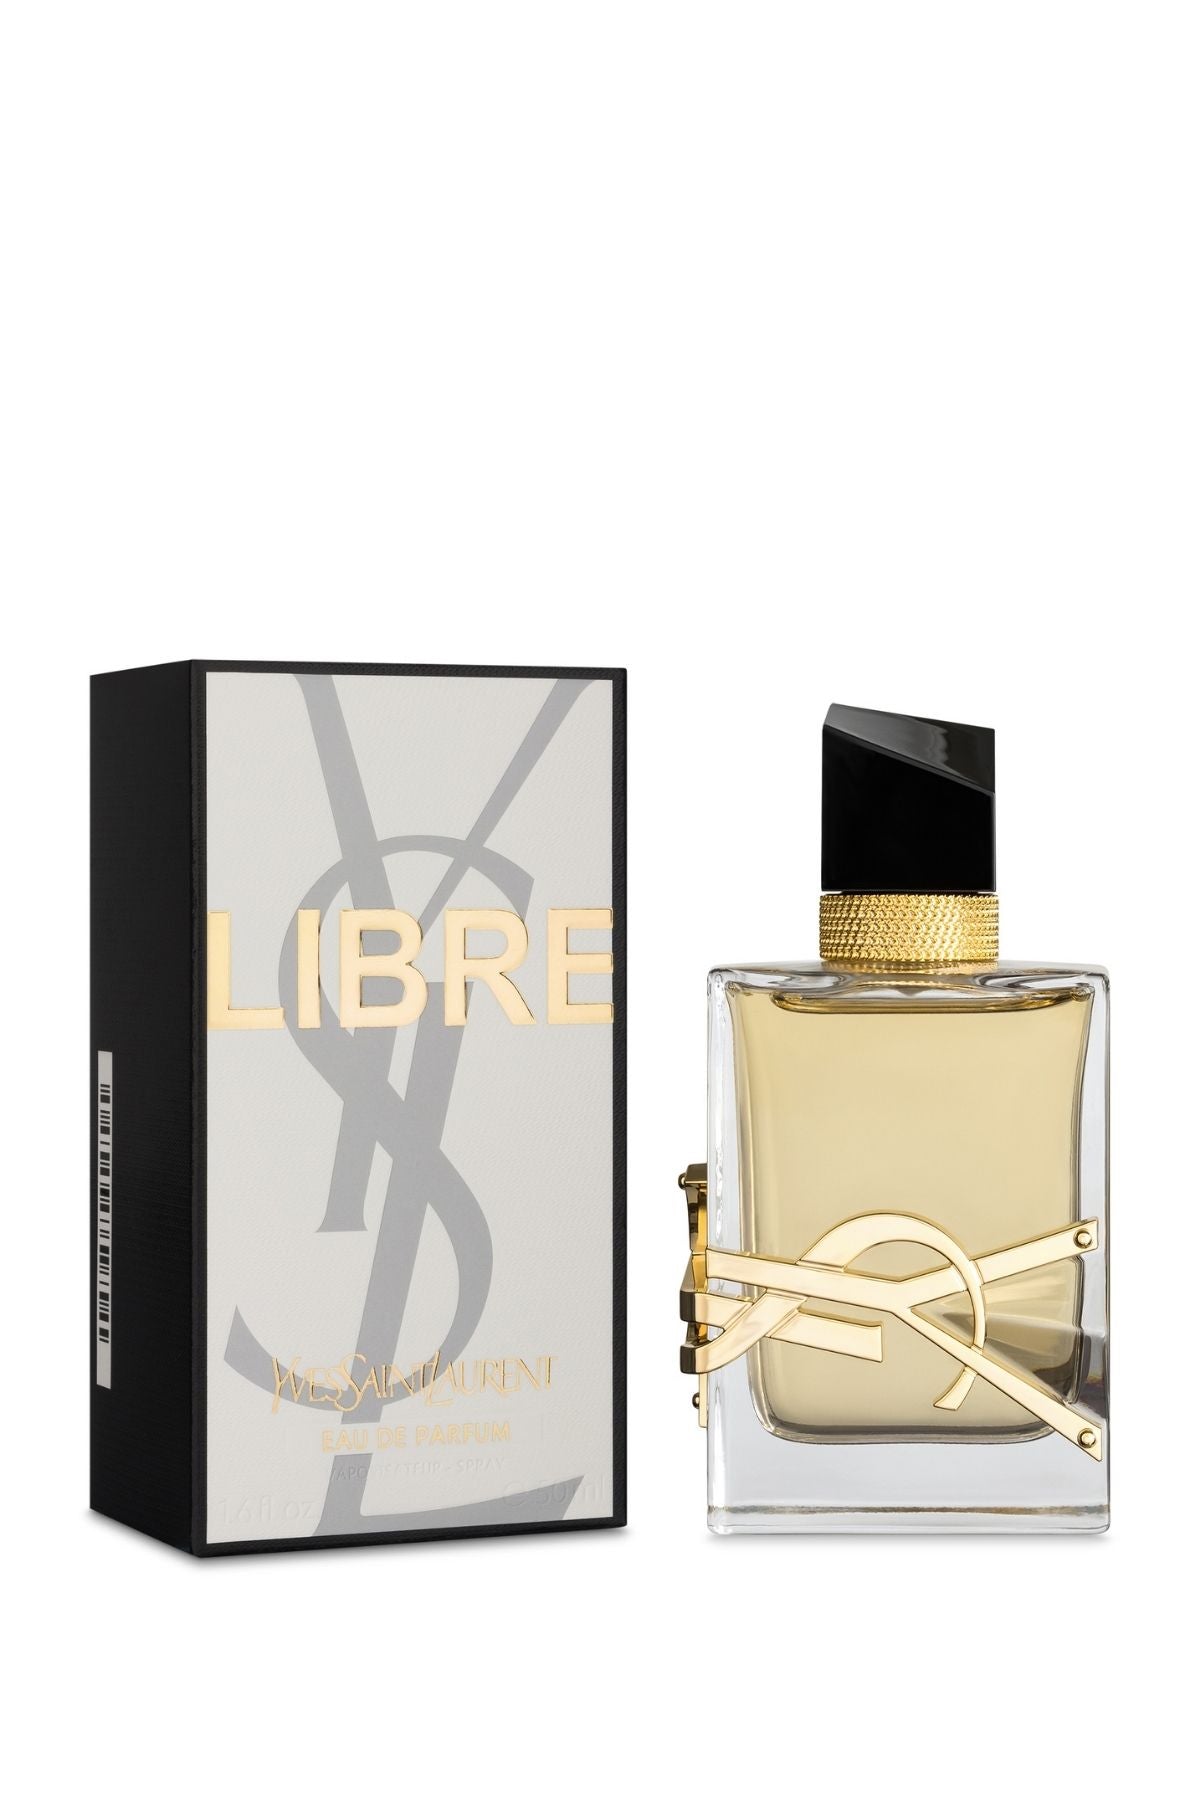 Libre Intense Yves Saint Laurent Eau de Parfum Spray 1 oz